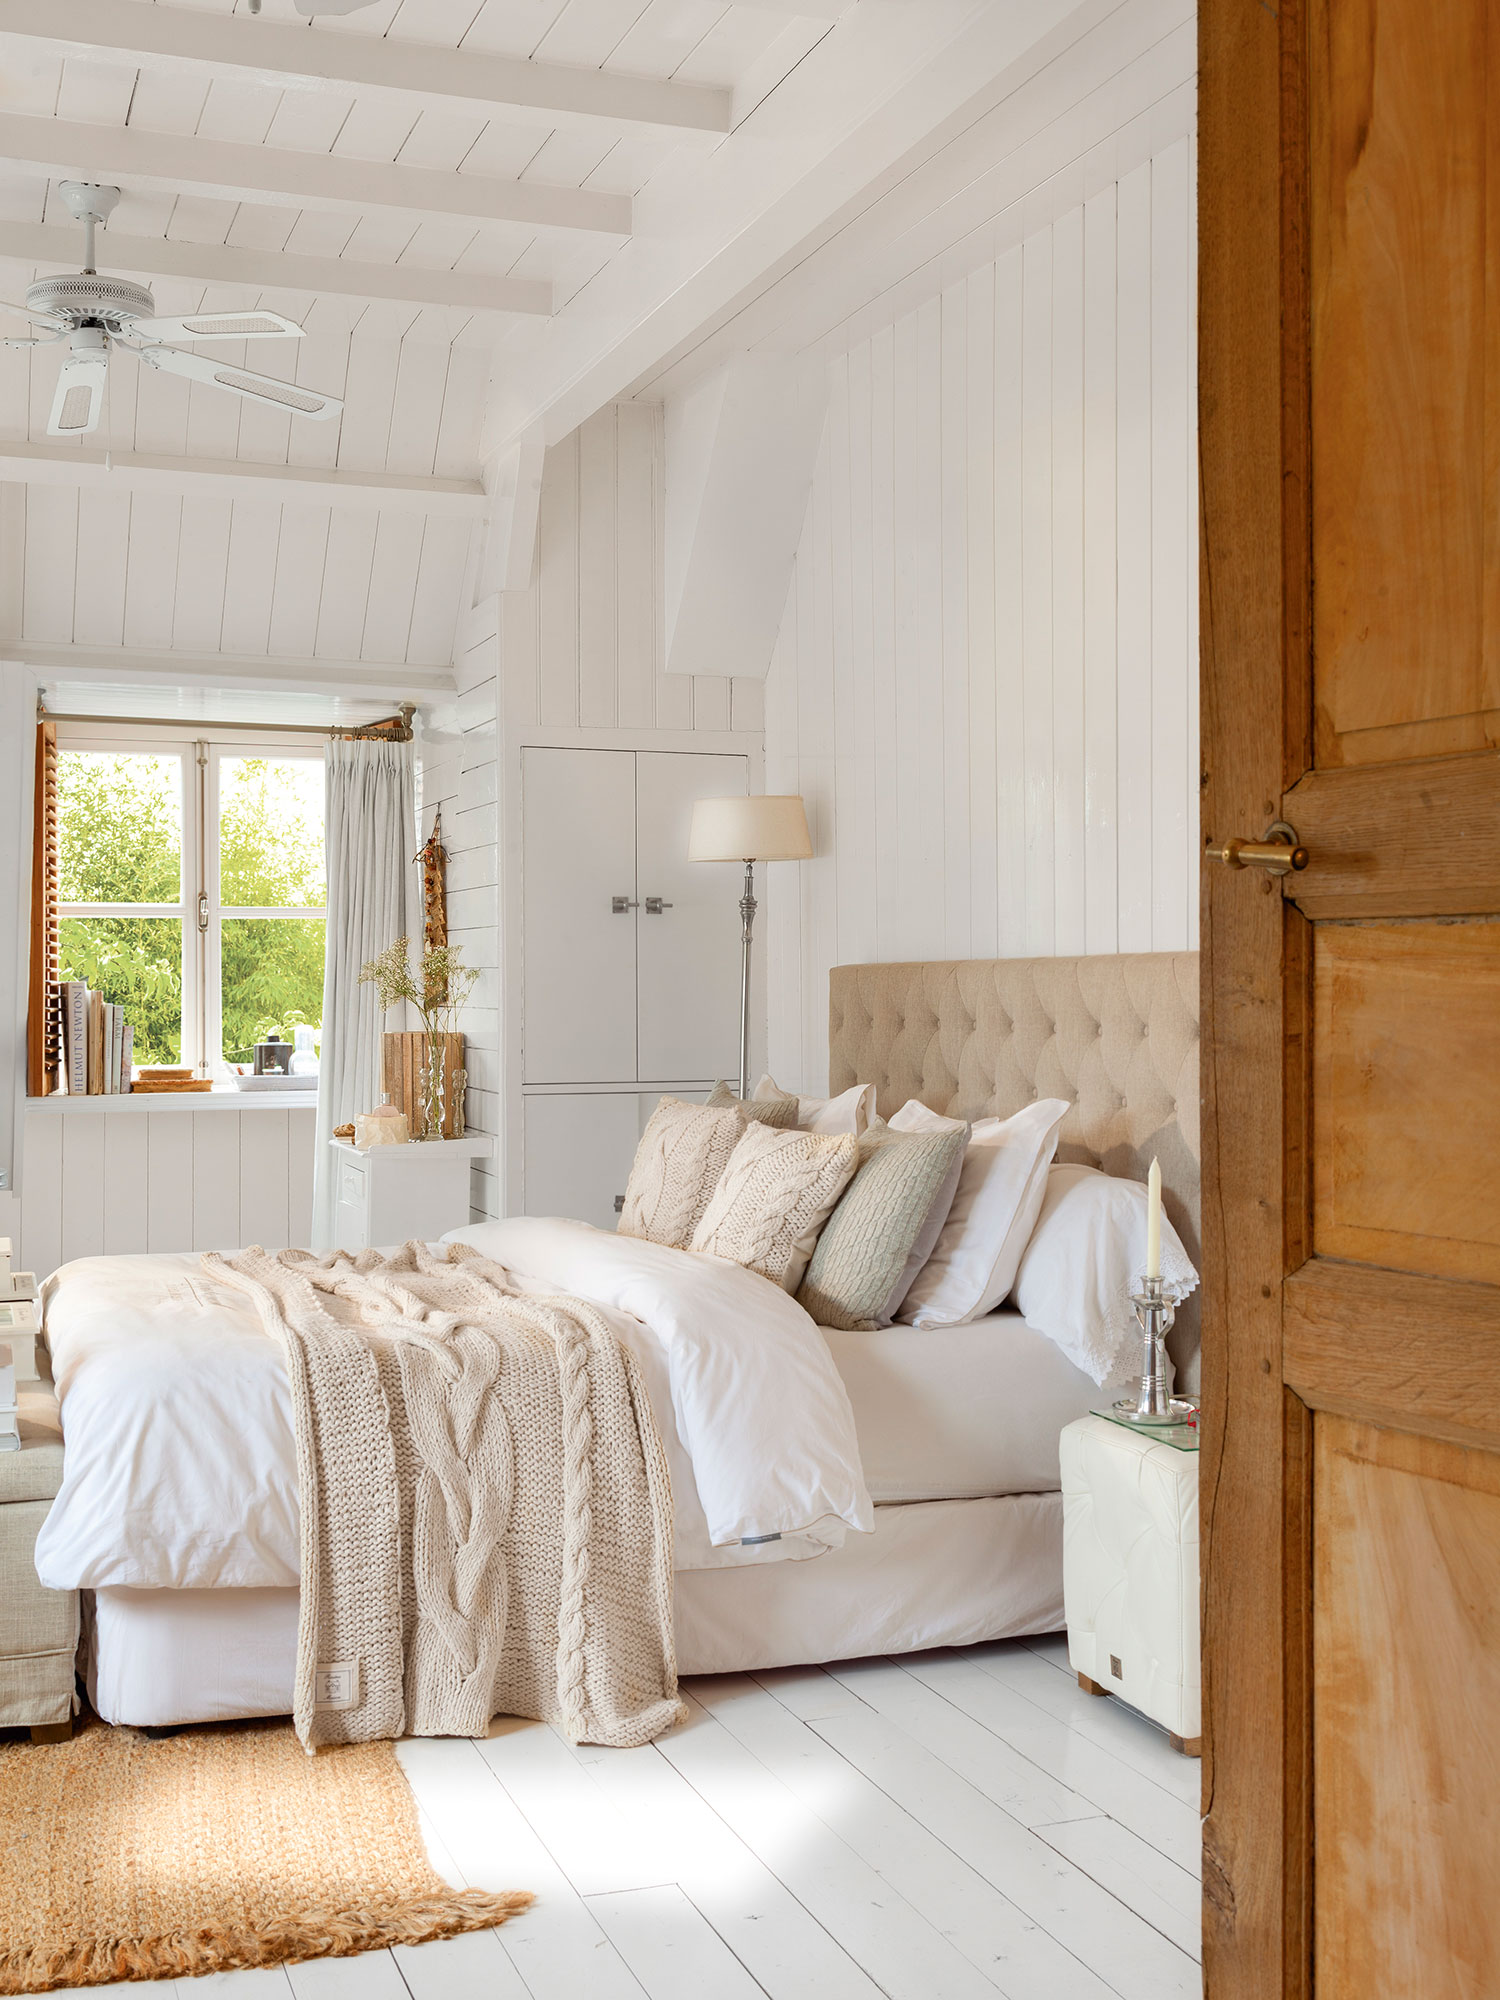 Dormitorio principal de estilo nórdico con cabecero alcolchado. 